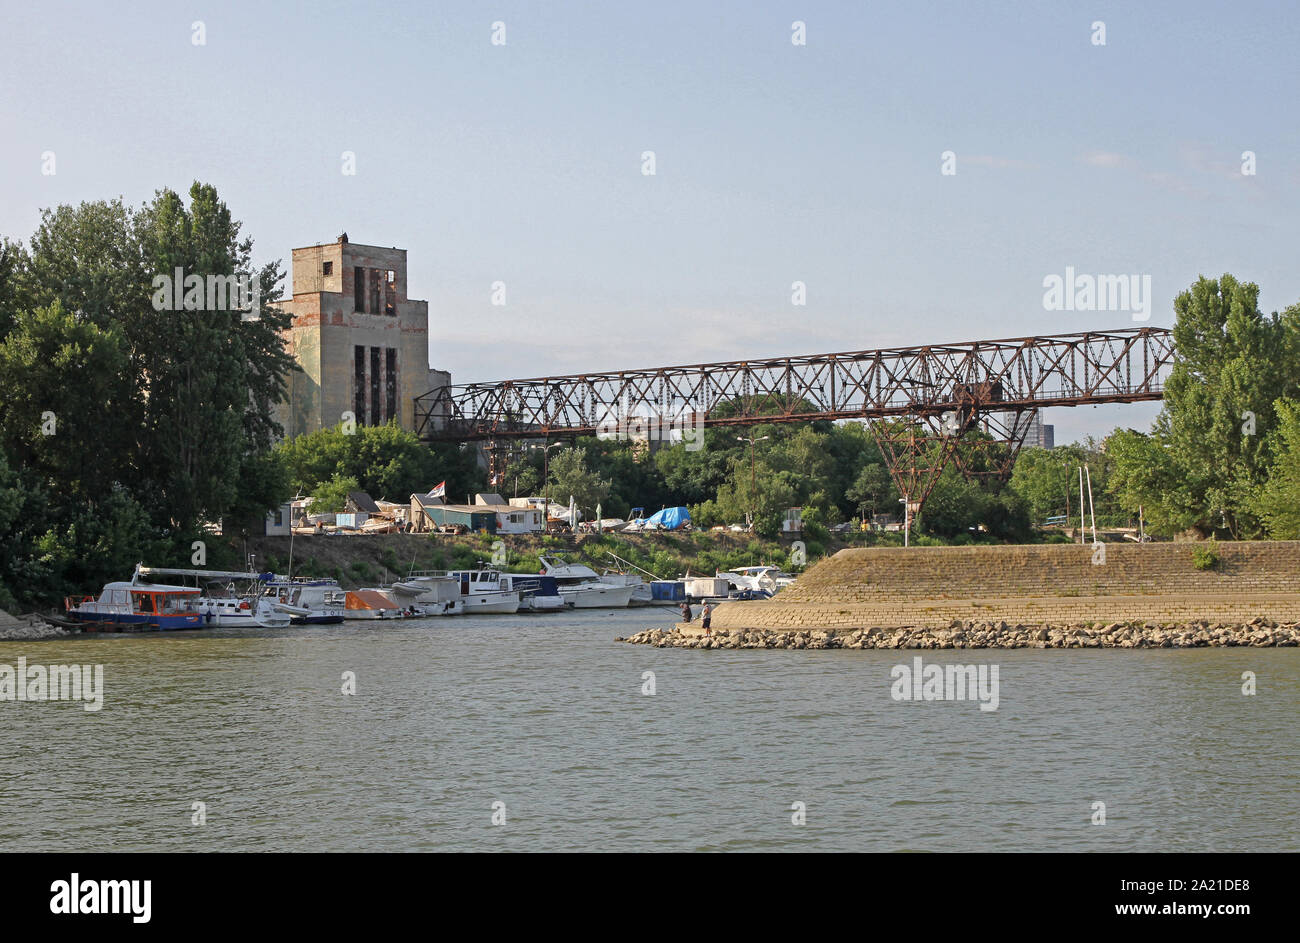 Ug Dorcol-Old Zentrale, Vereinigung der Städte für den Tourismus und Erholung auf dem Wasser von Dorcol - alte Zentrale, ein historischer Grenzstein auf der Donau, Belgrad, Serbien. Stockfoto